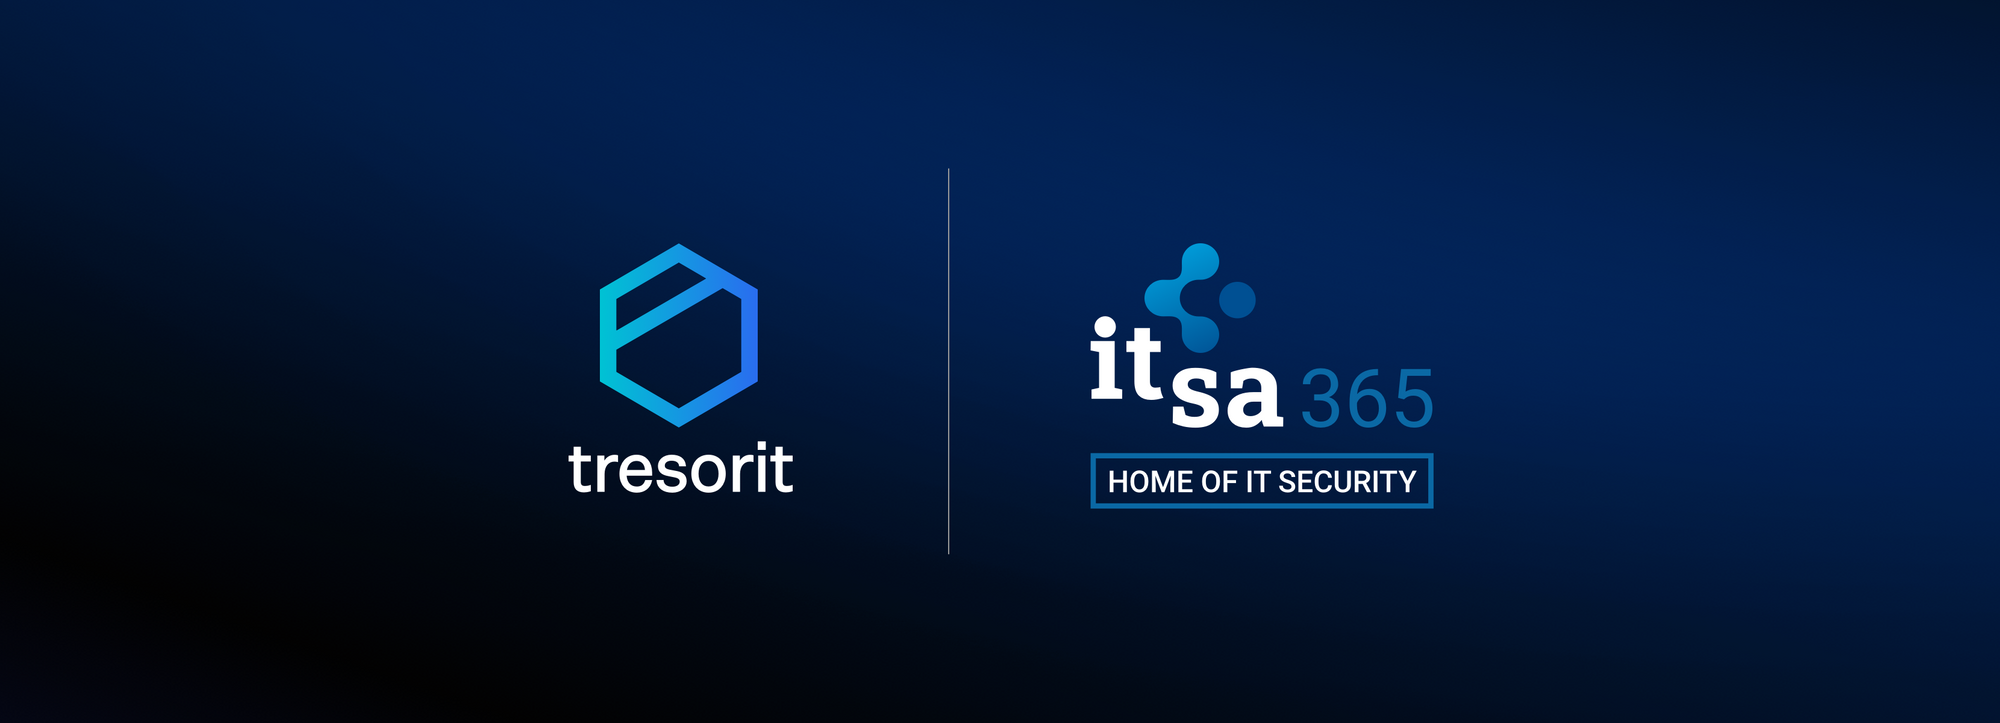 Neue Wege für IT und Cybersicherheit – Tresorit nimmt an it-sa IT-Security Messe und Kongress 2021 in Nürnberg teil